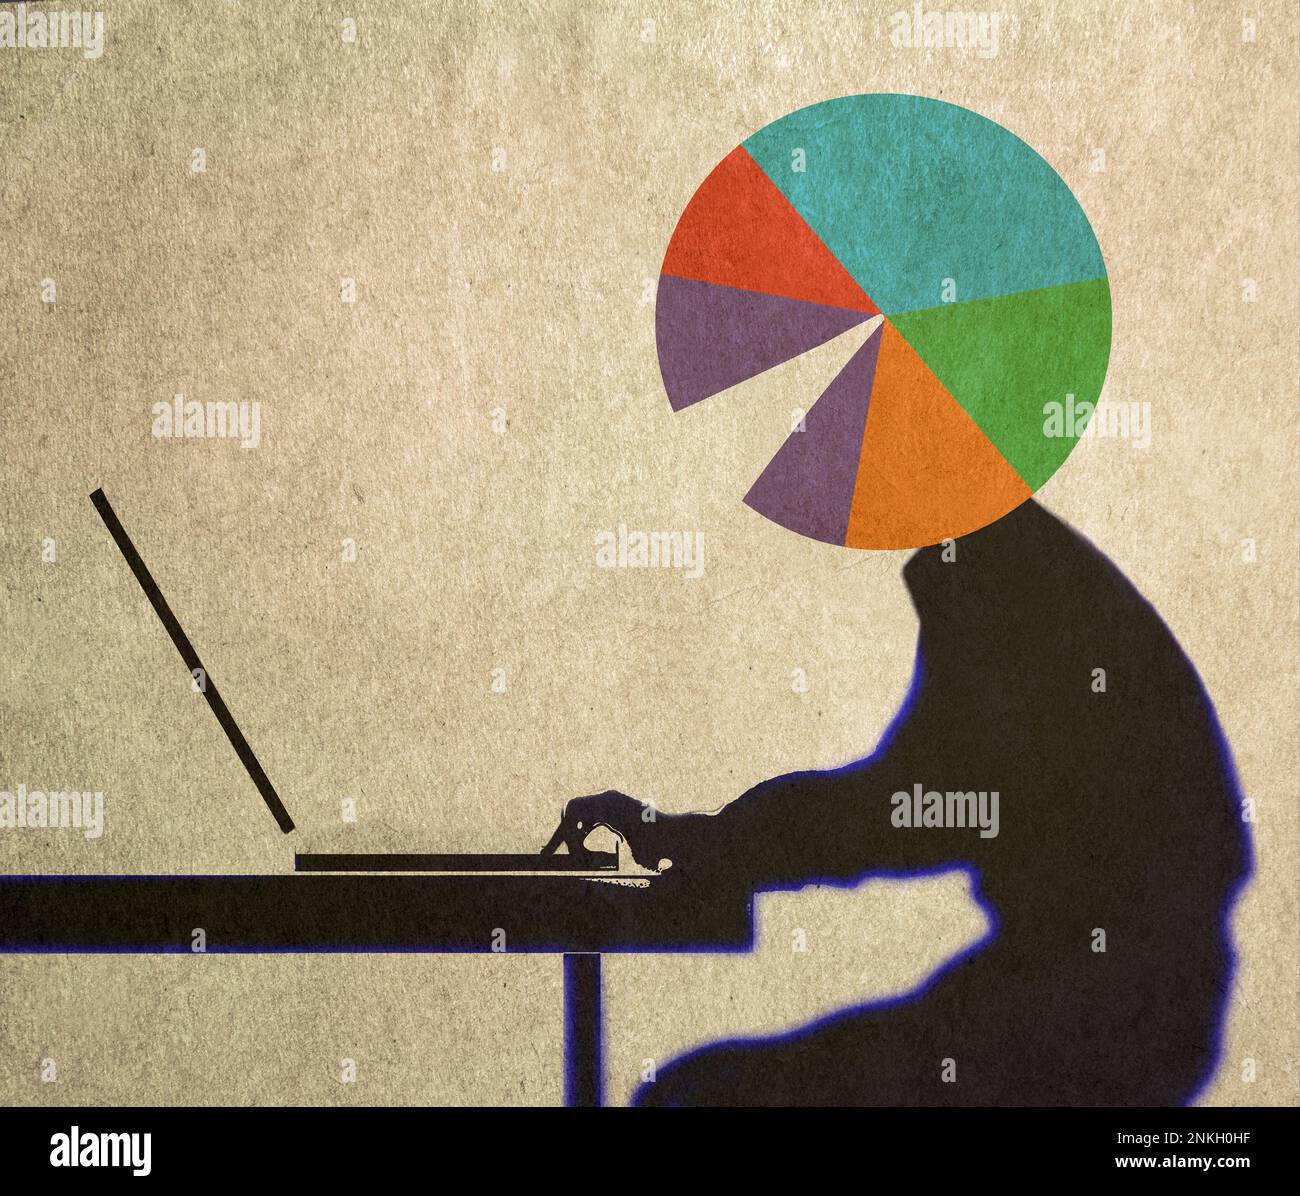 Abbildung: Person mit Tortendiagramm, anstatt mit dem Kopf am Laptop zu arbeiten Stockfoto